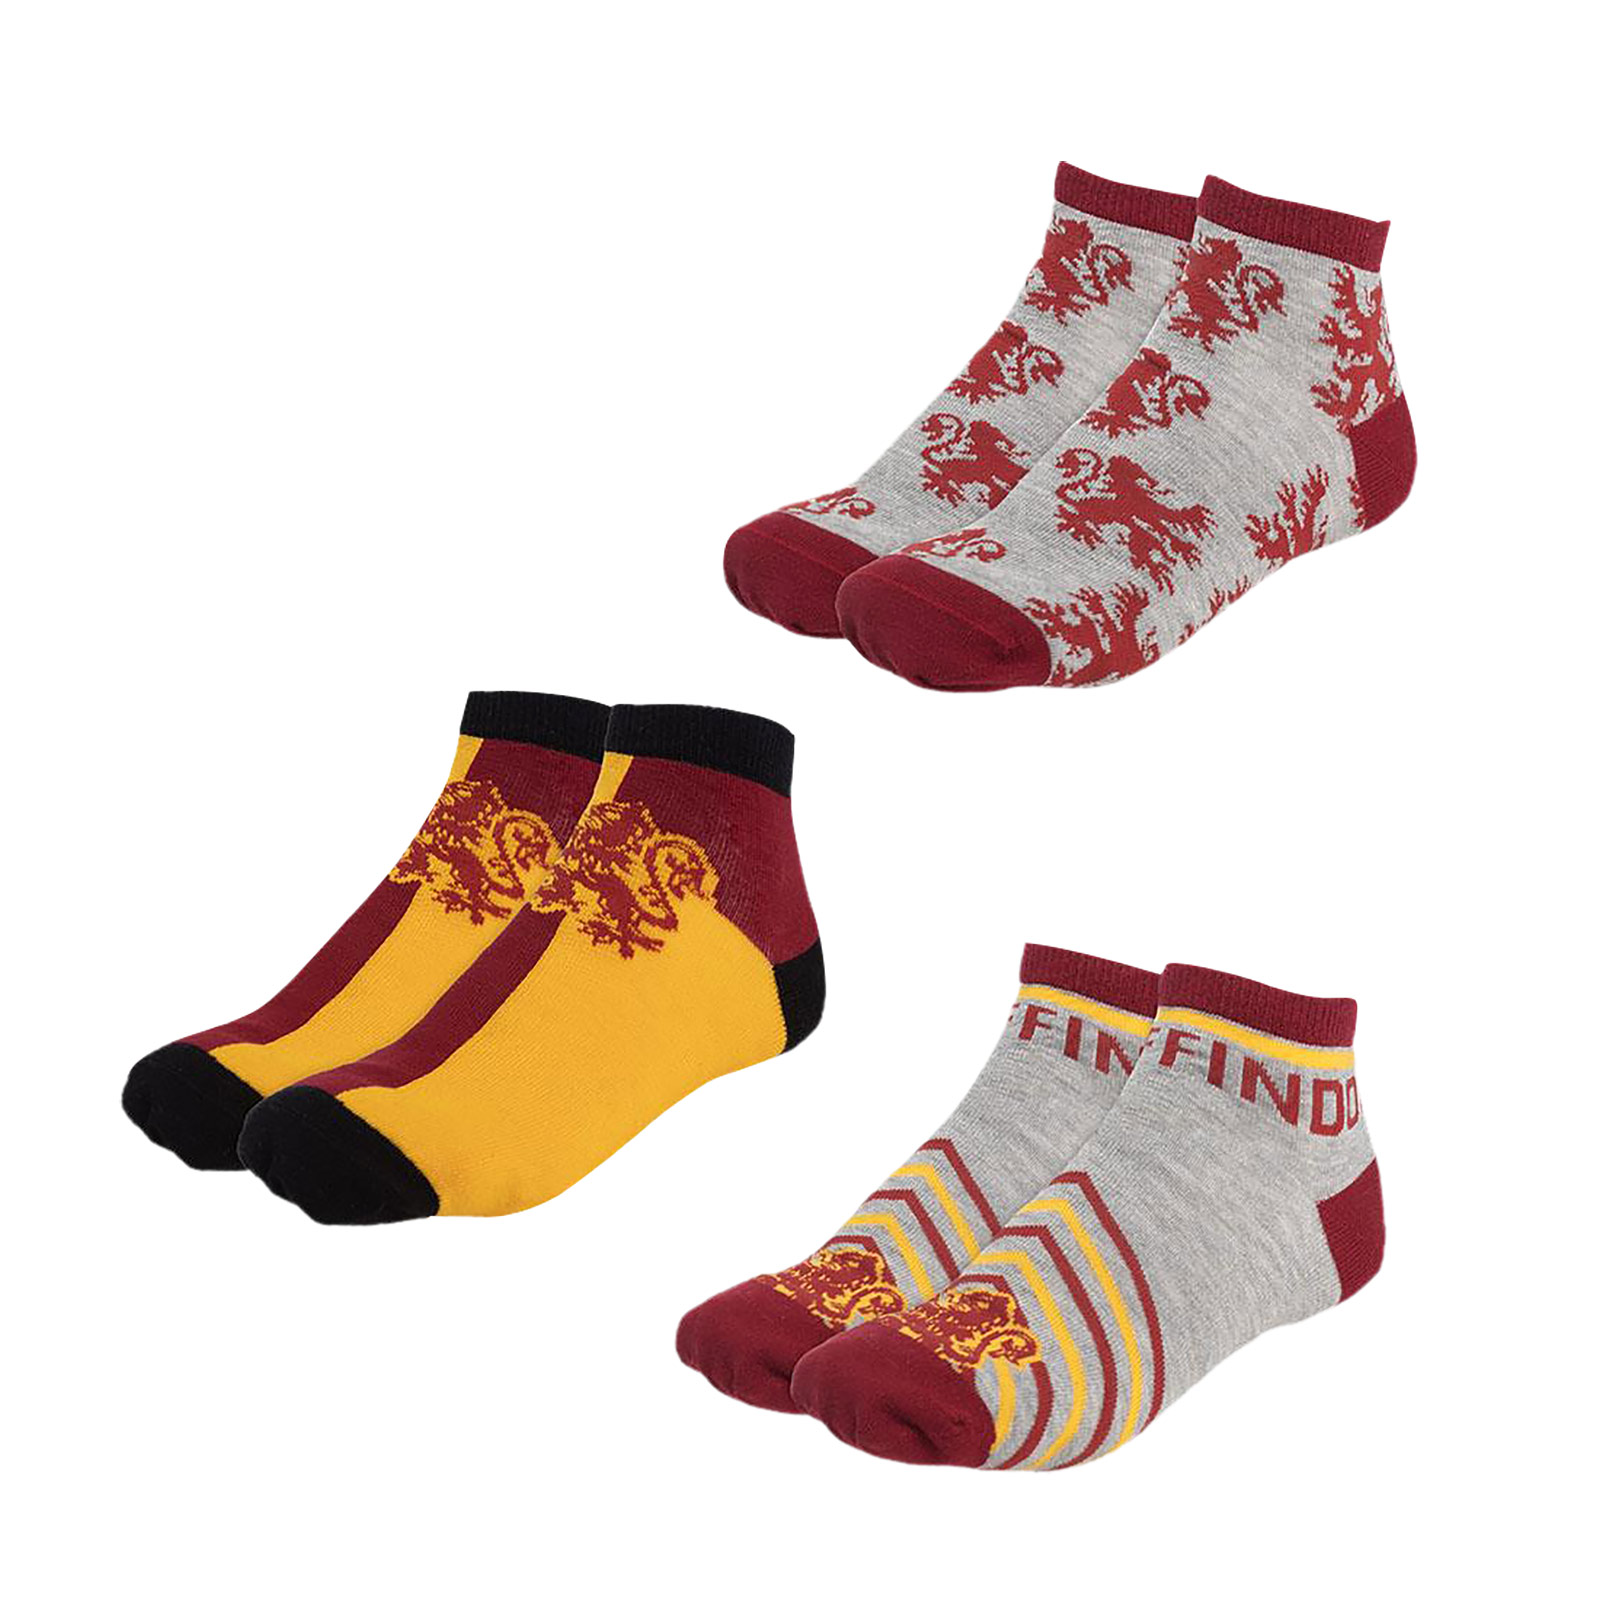 Harry Potter - Gryffindor Socken 3er Set